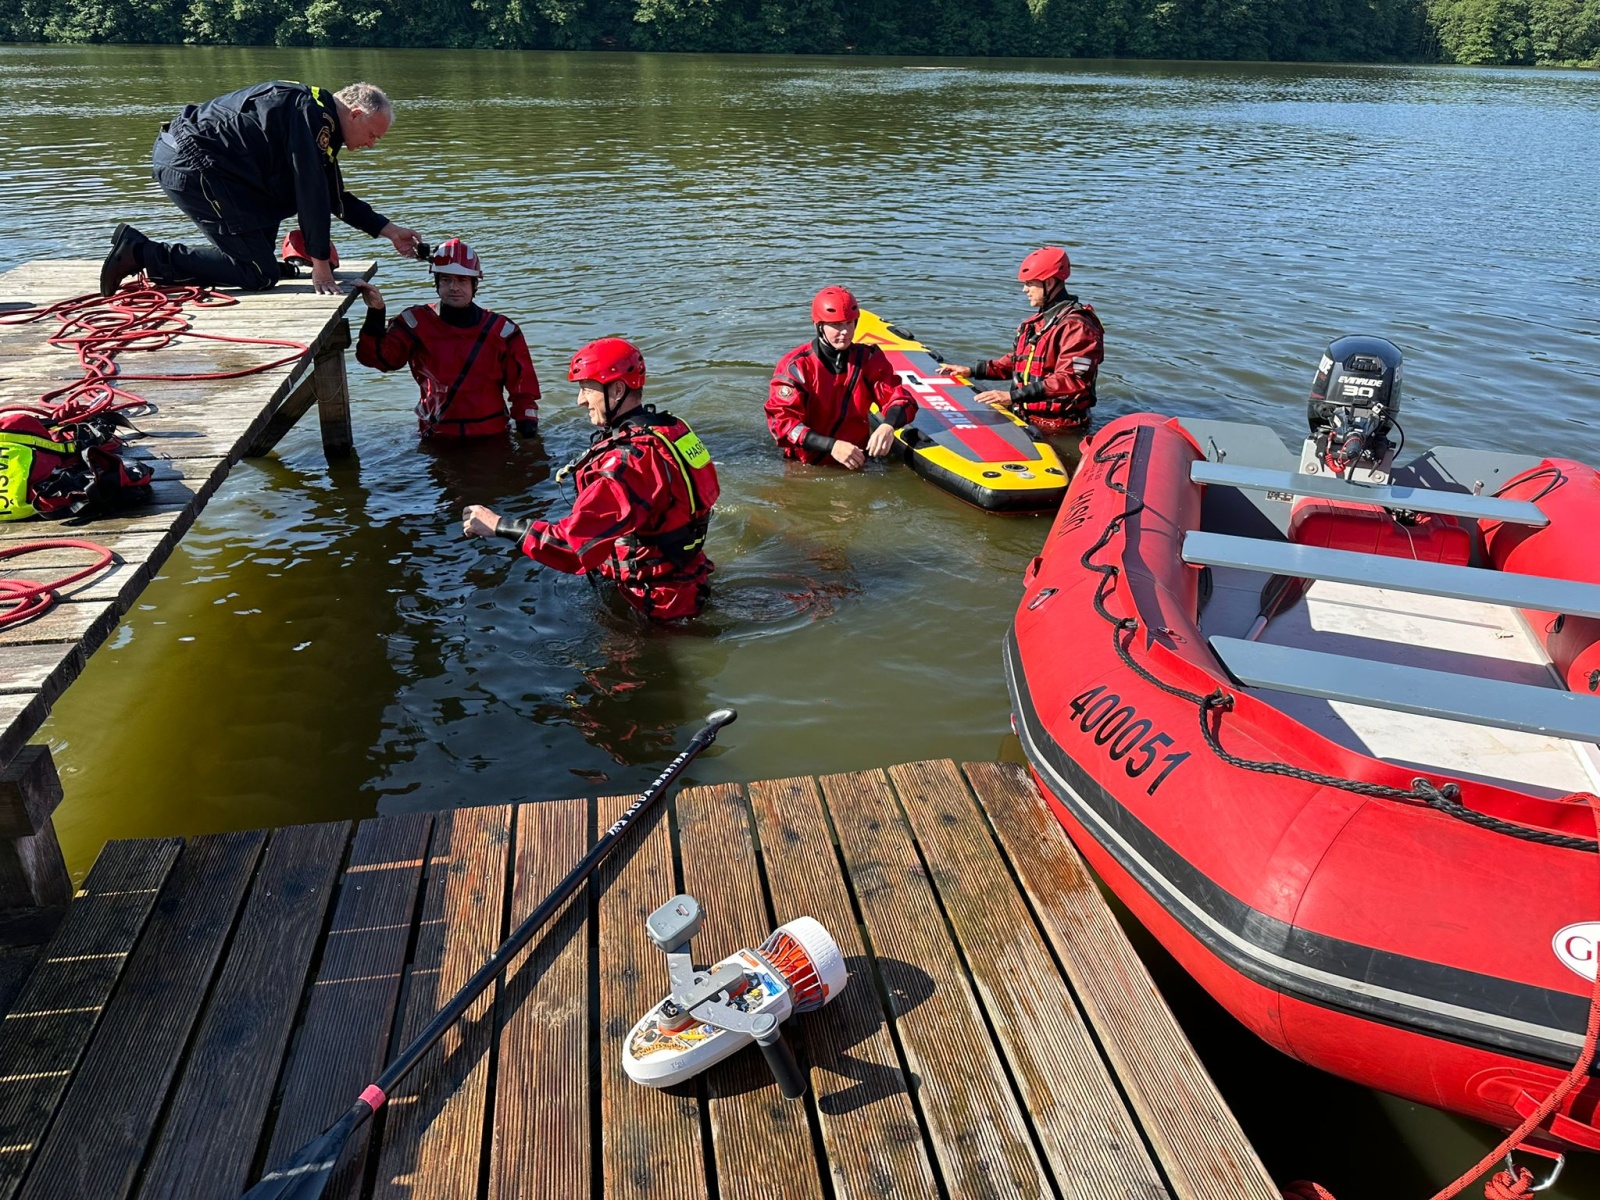 030-Výcvik hasičů na klidné vodní hladině rybníka Vyžlovka.jpeg